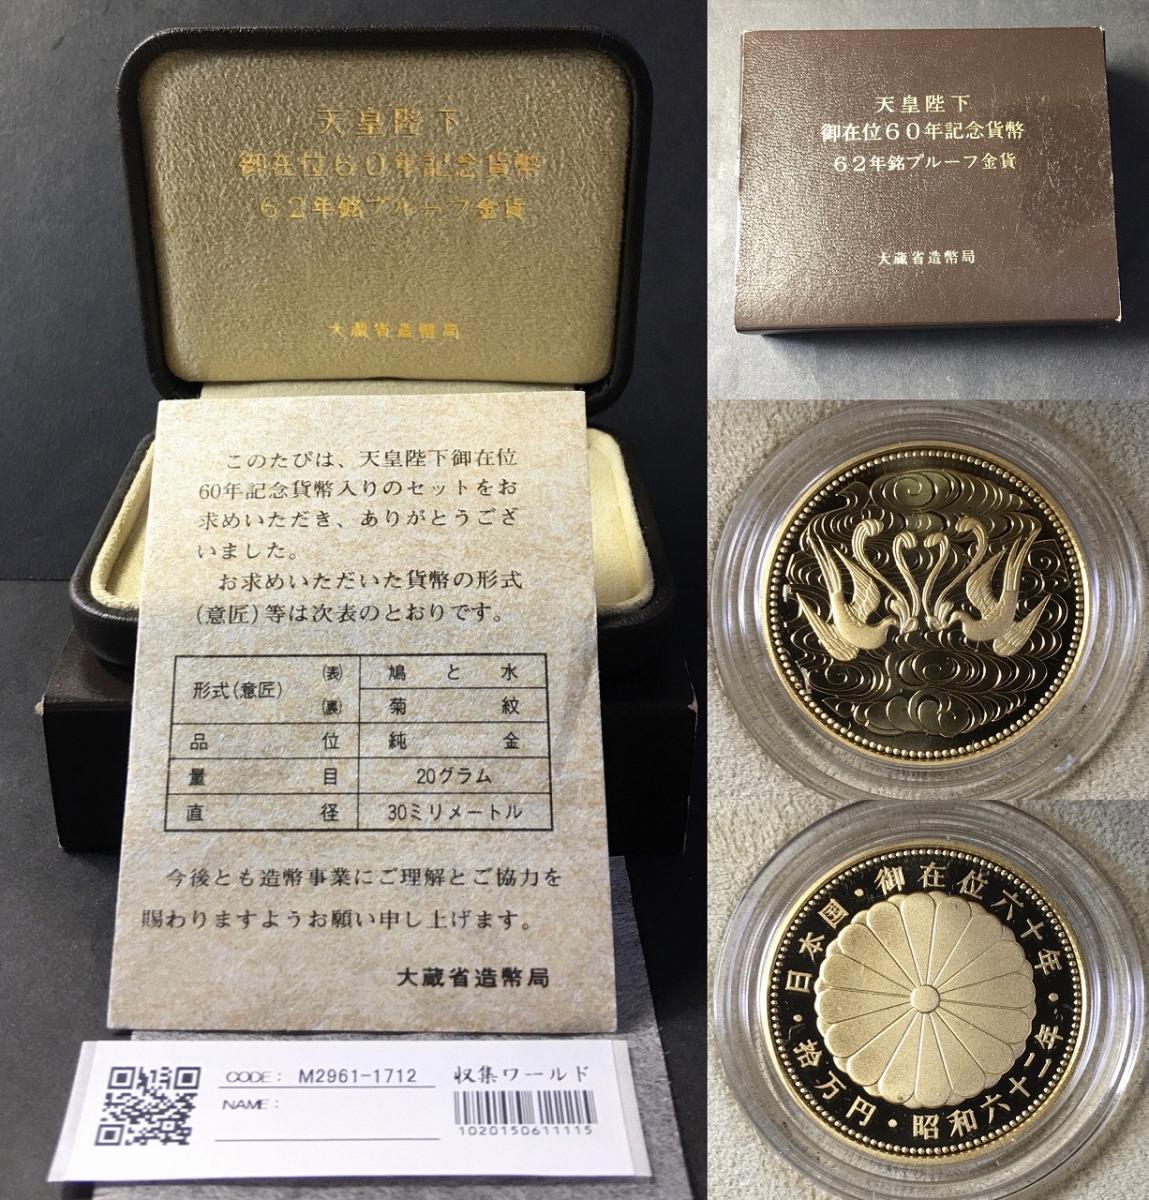 天皇陛下御在位60年記念 10万円金貨 プルーフ硬貨 1万円銀貨 各１枚 